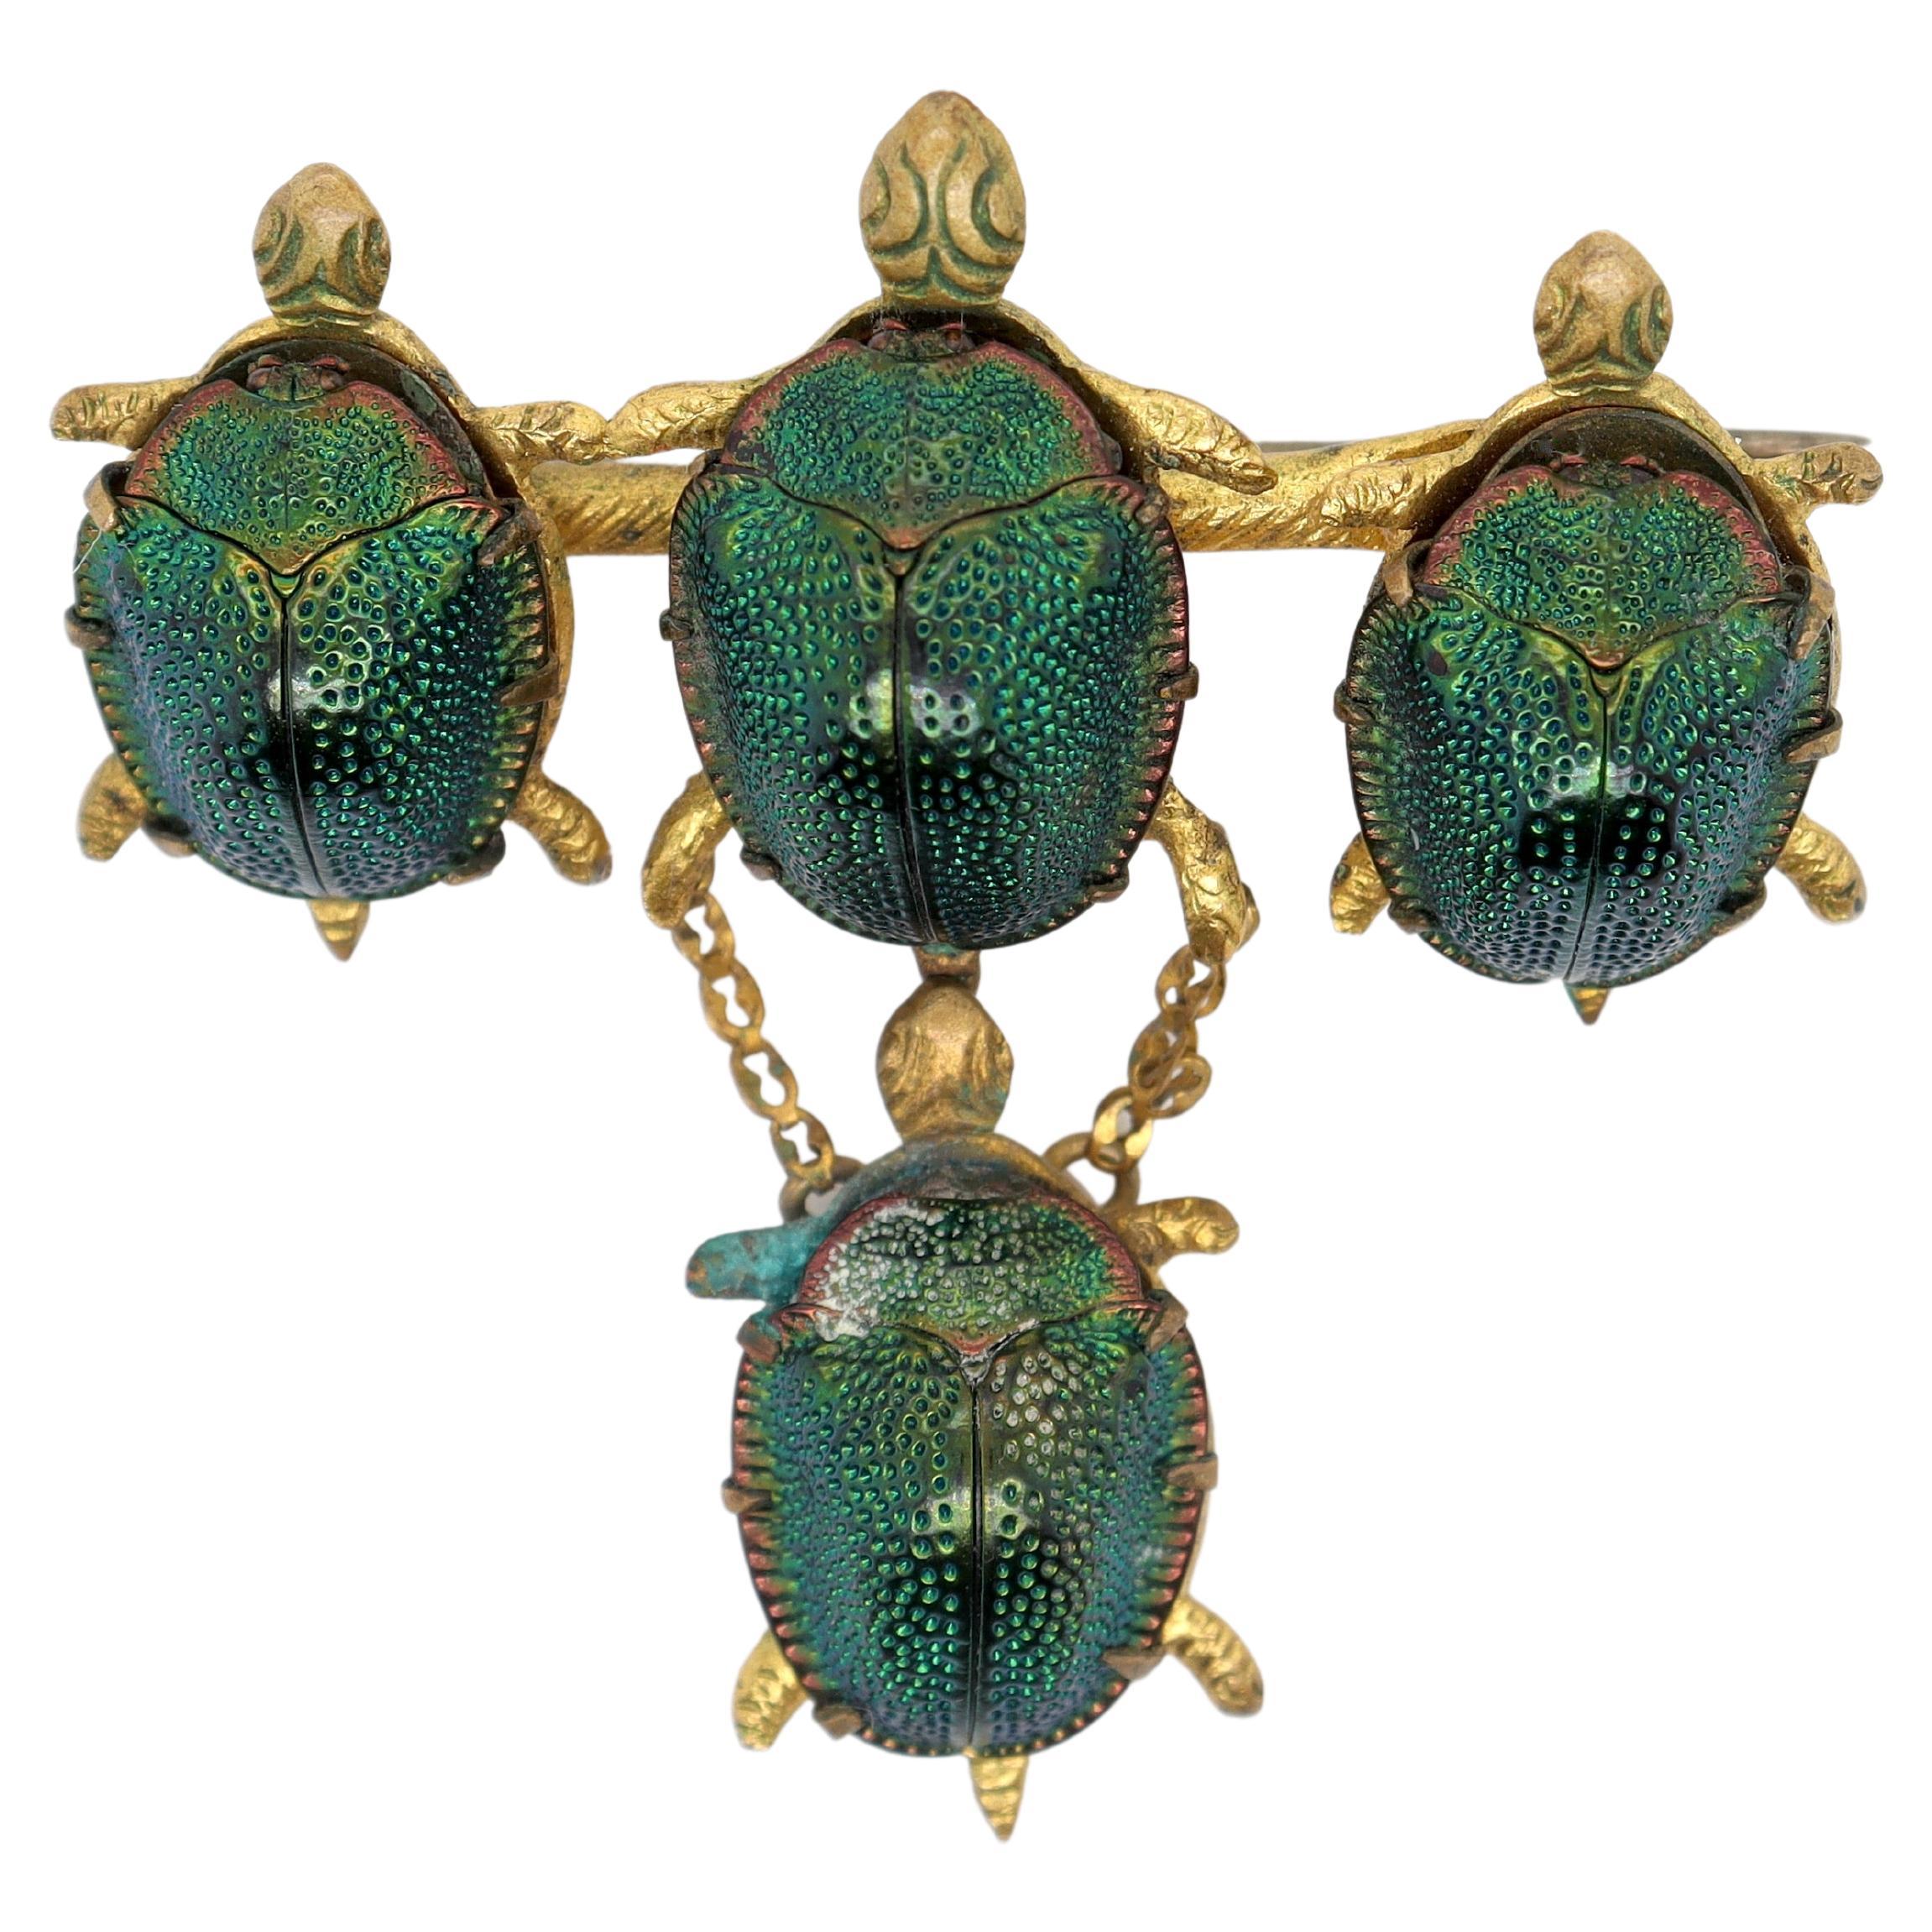 Antike viktorianische Goldbrosche mit gefüllten Schildkrötenpanzern und ägyptischen Skarabäusschalen